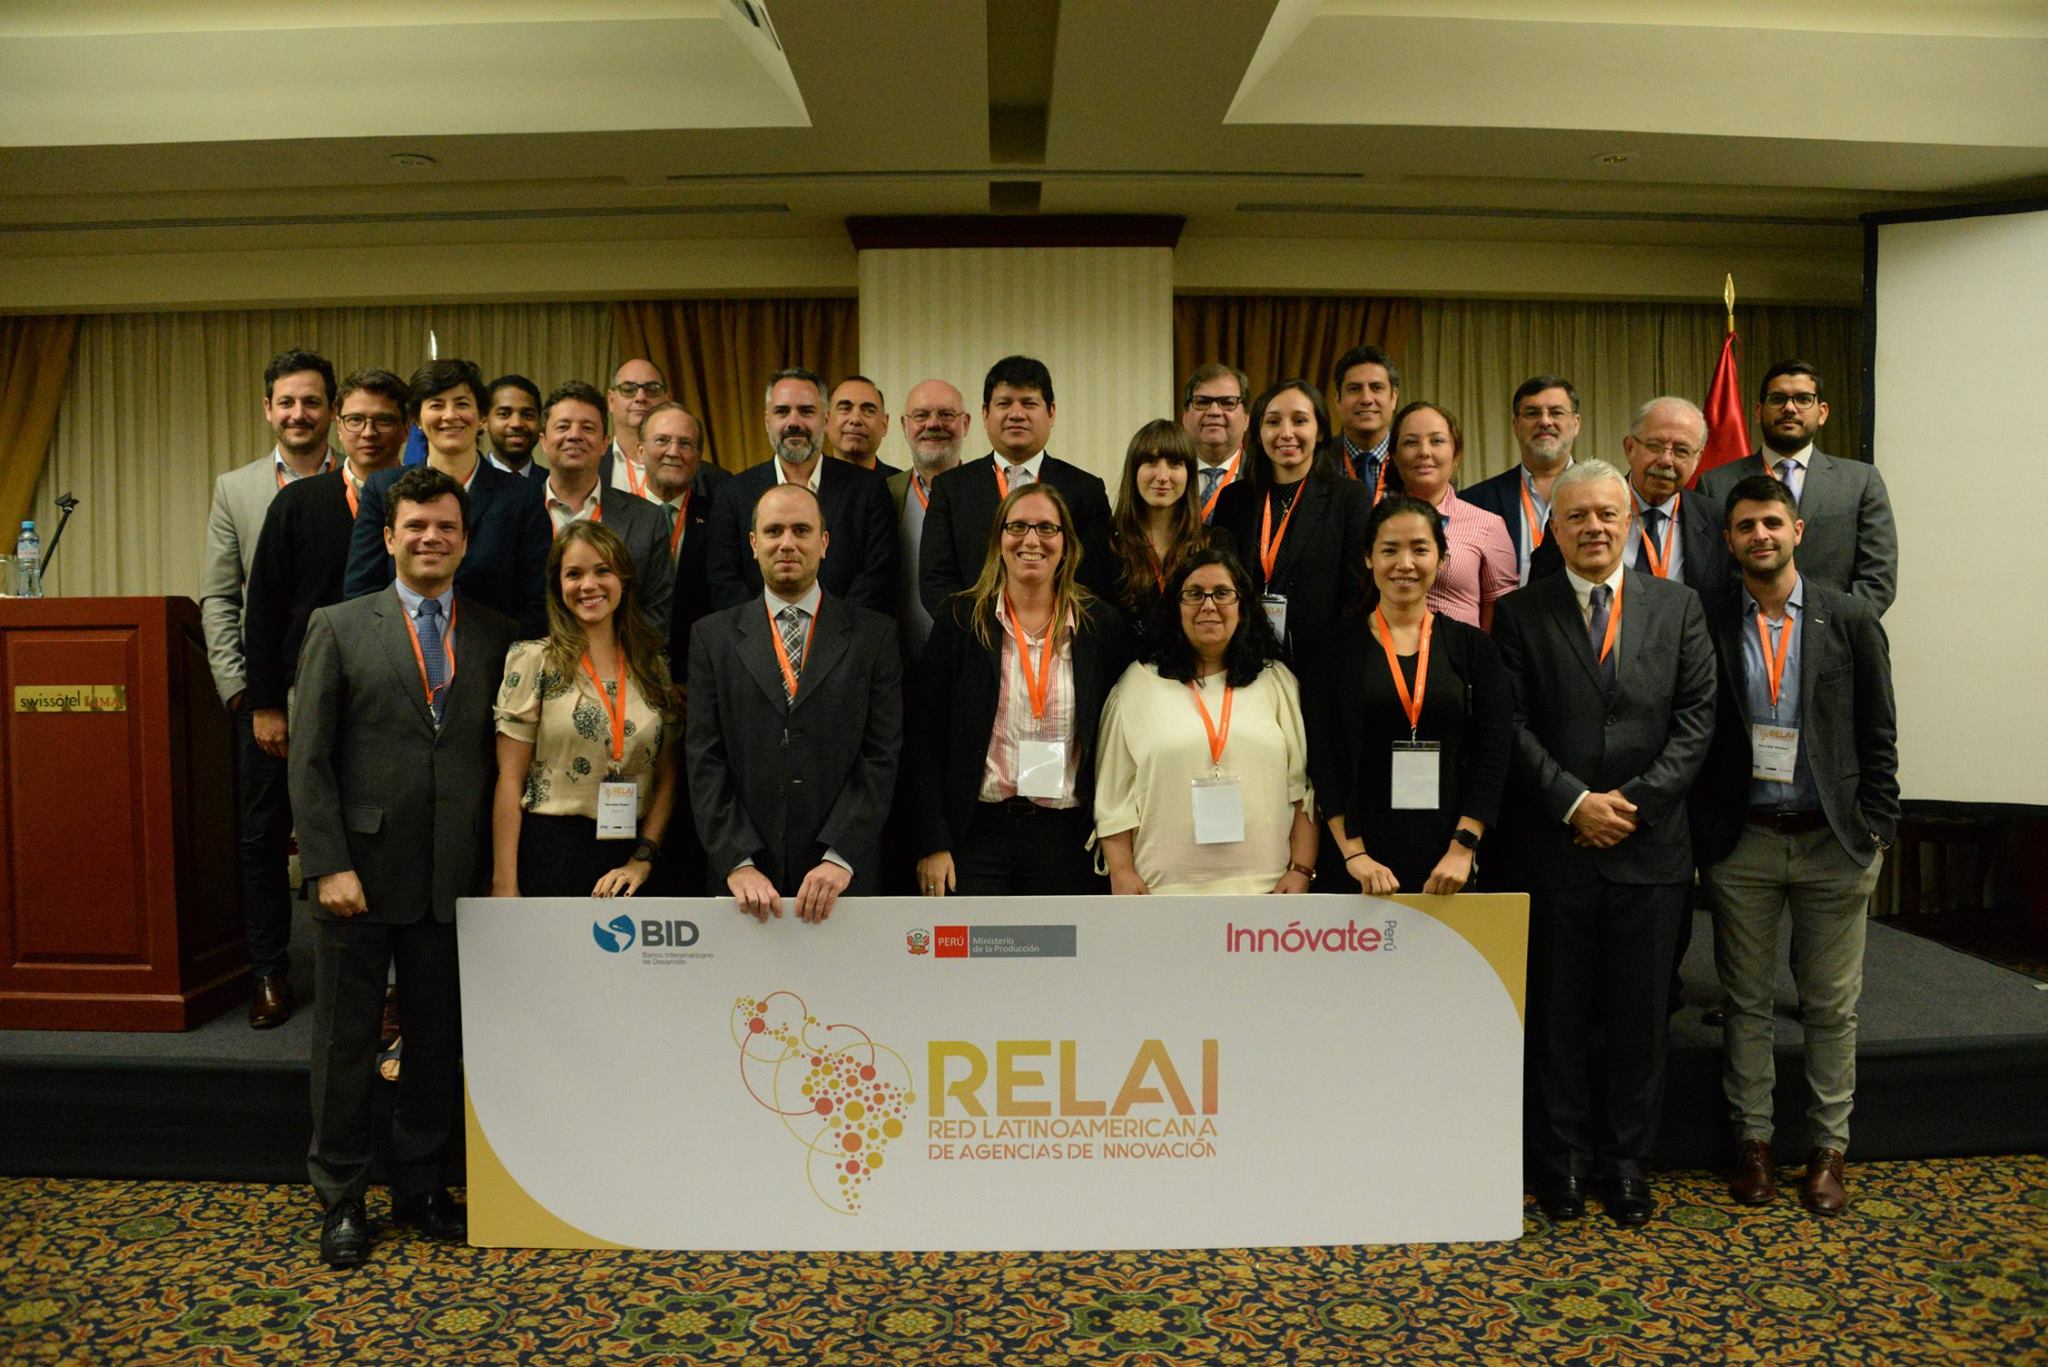 Representantes de La ReLAI en el encuentro en Lima.